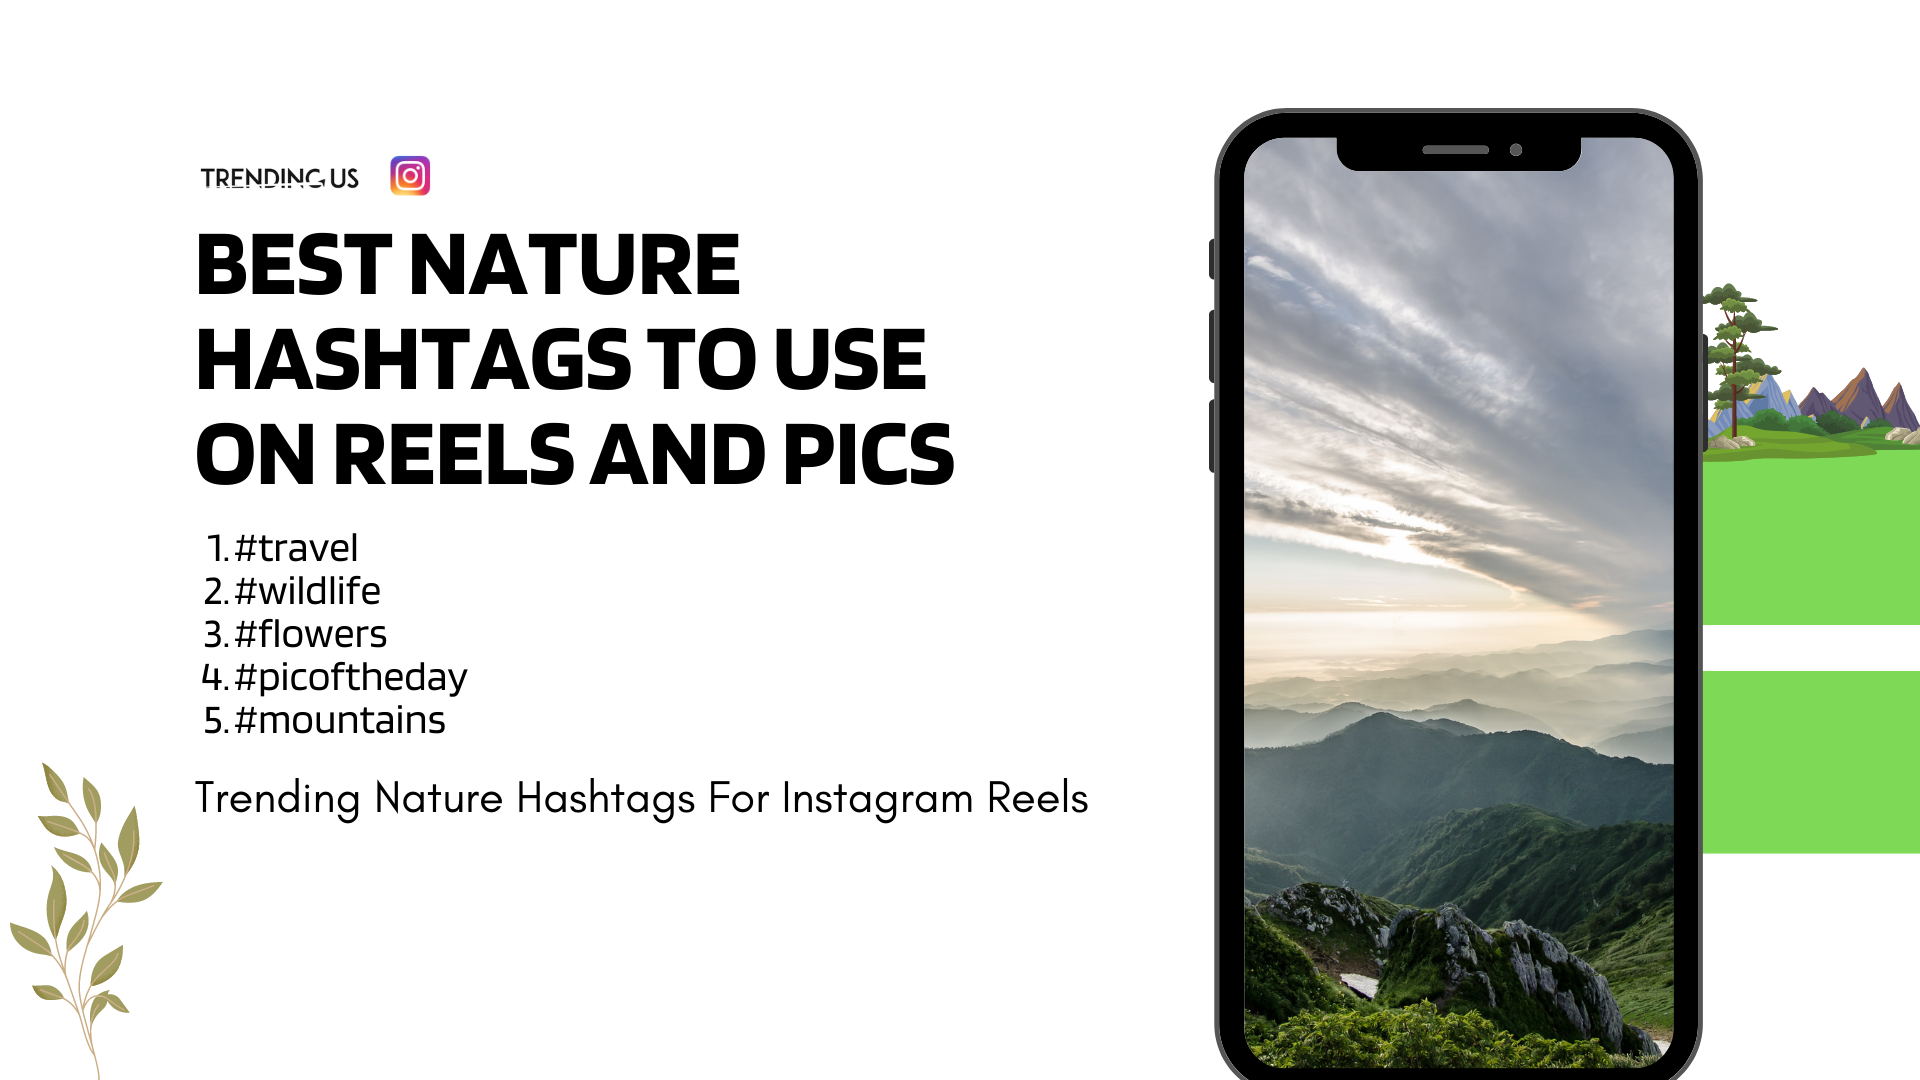 94 Trending Nature Hashtags For Instagram Reels » Trending Us